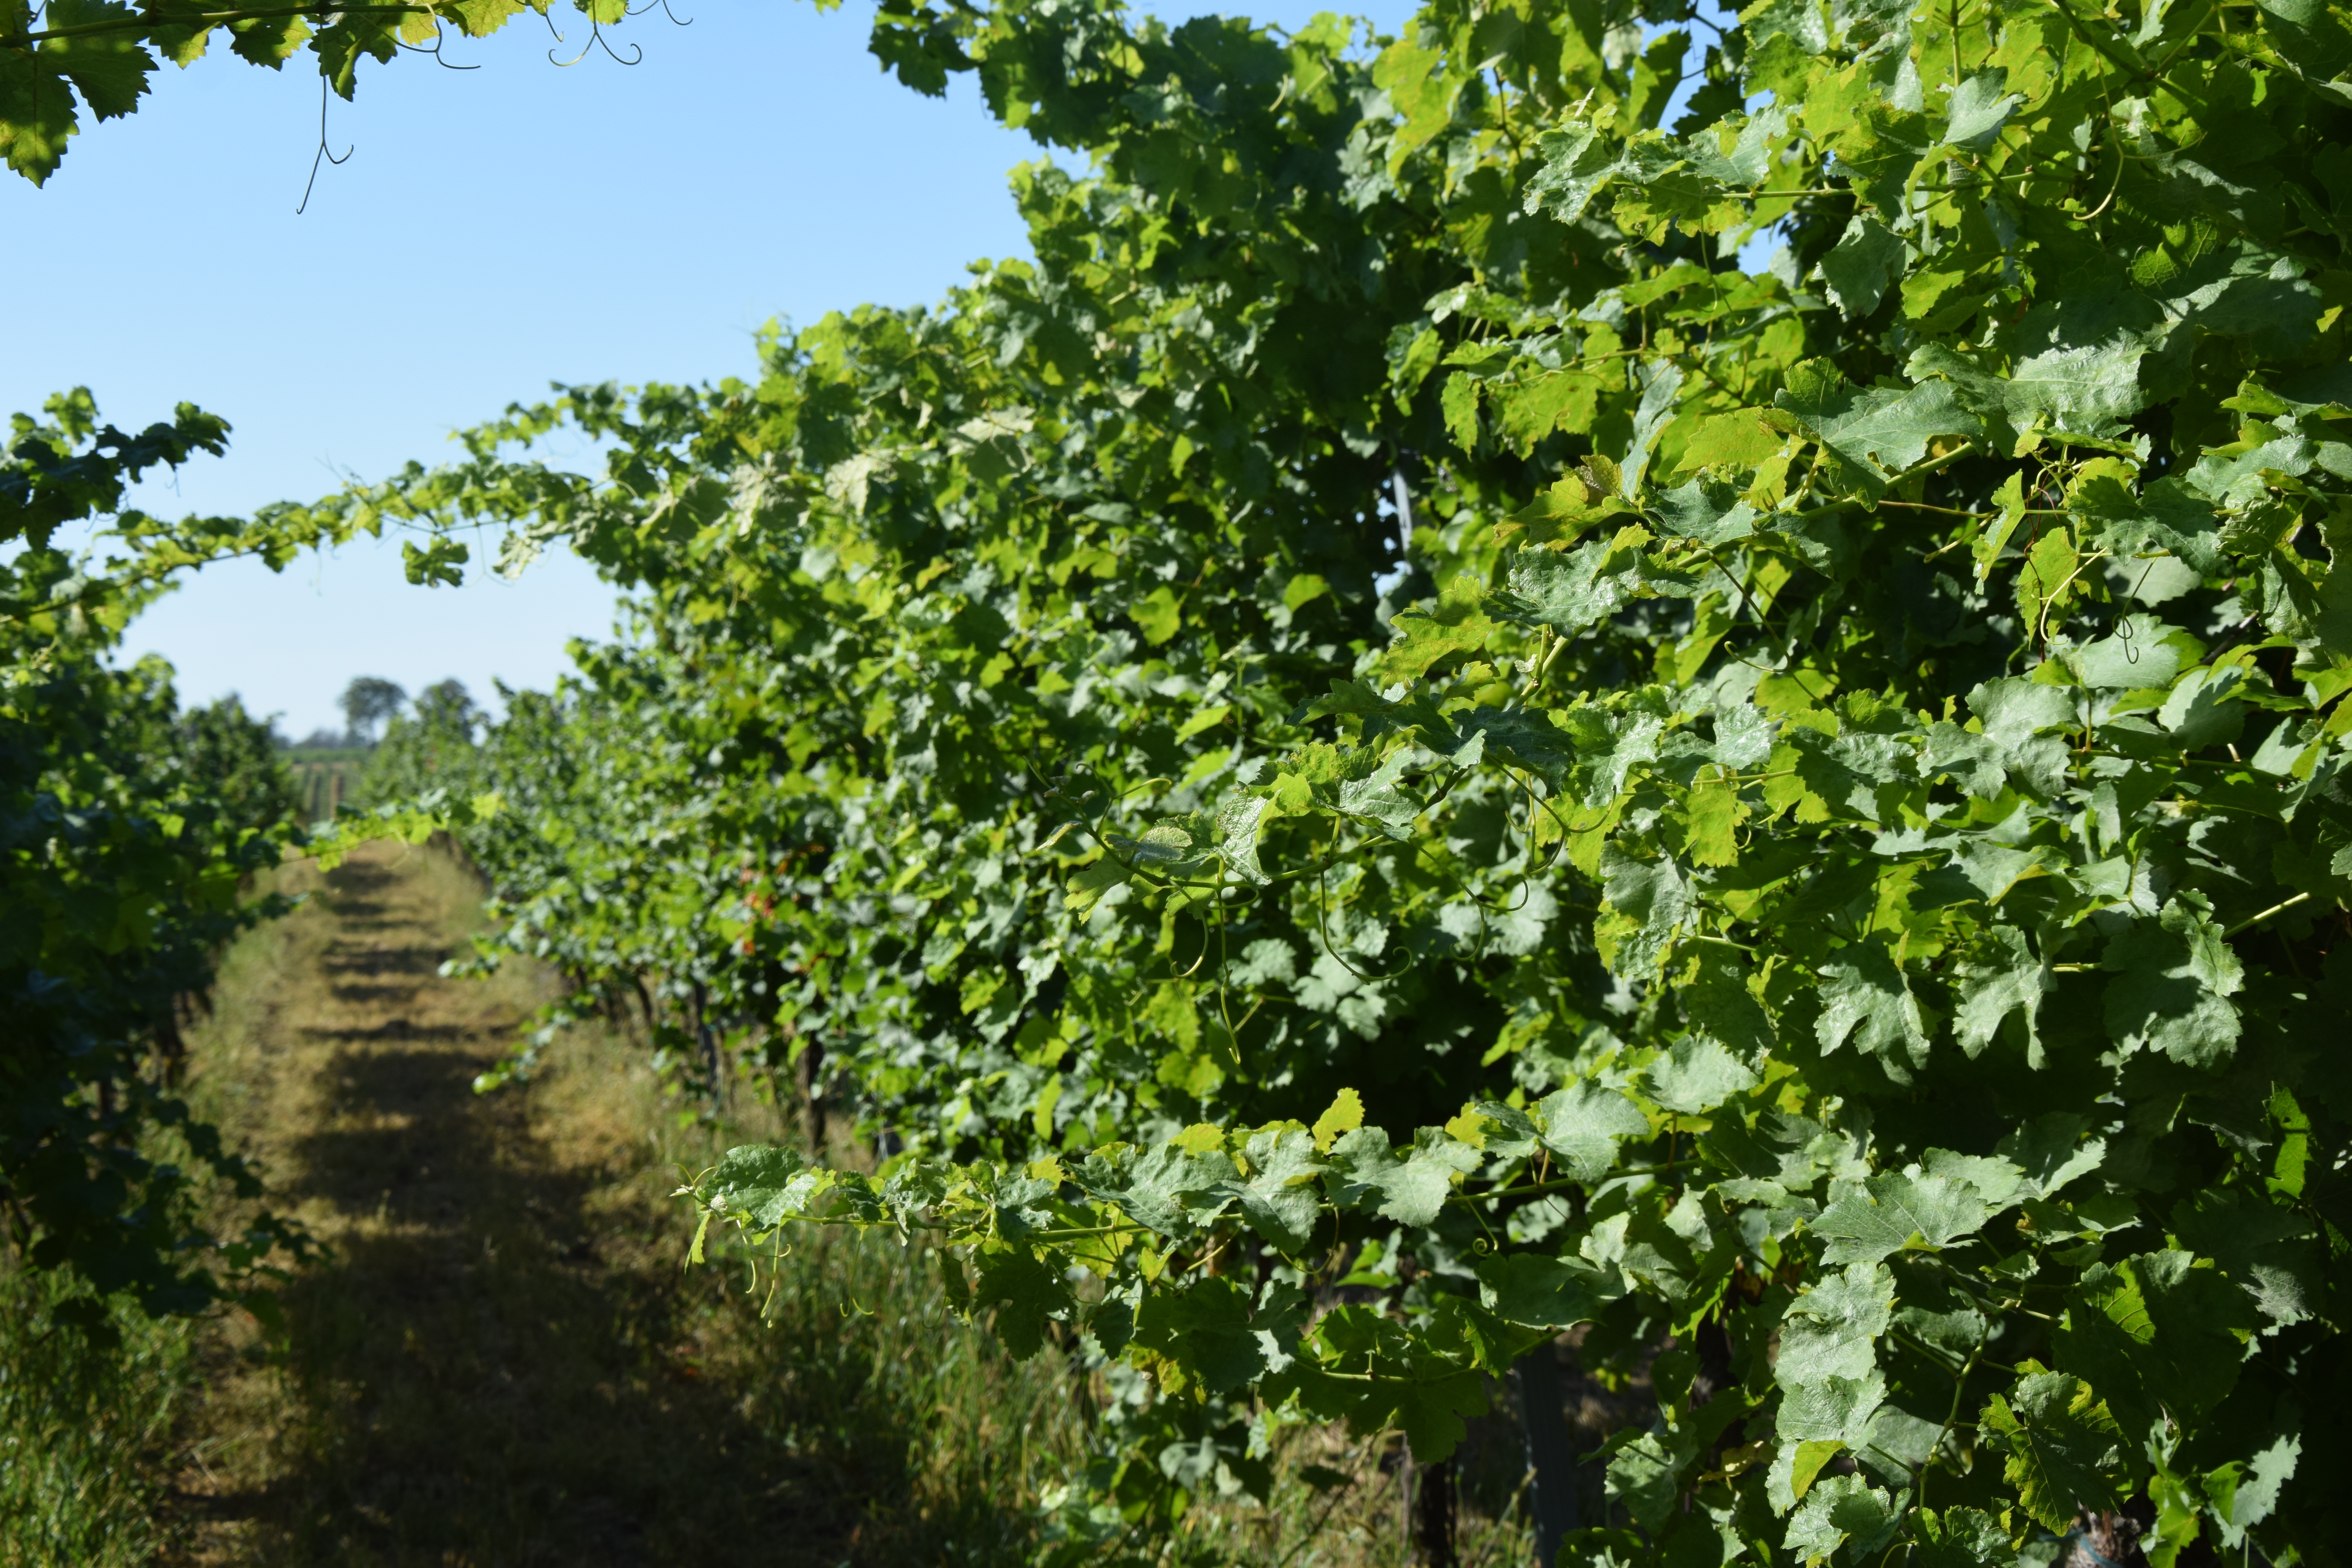 Obrázek 2 - Vynikající růstová vitalita odrůdy Sauvignon blanc.